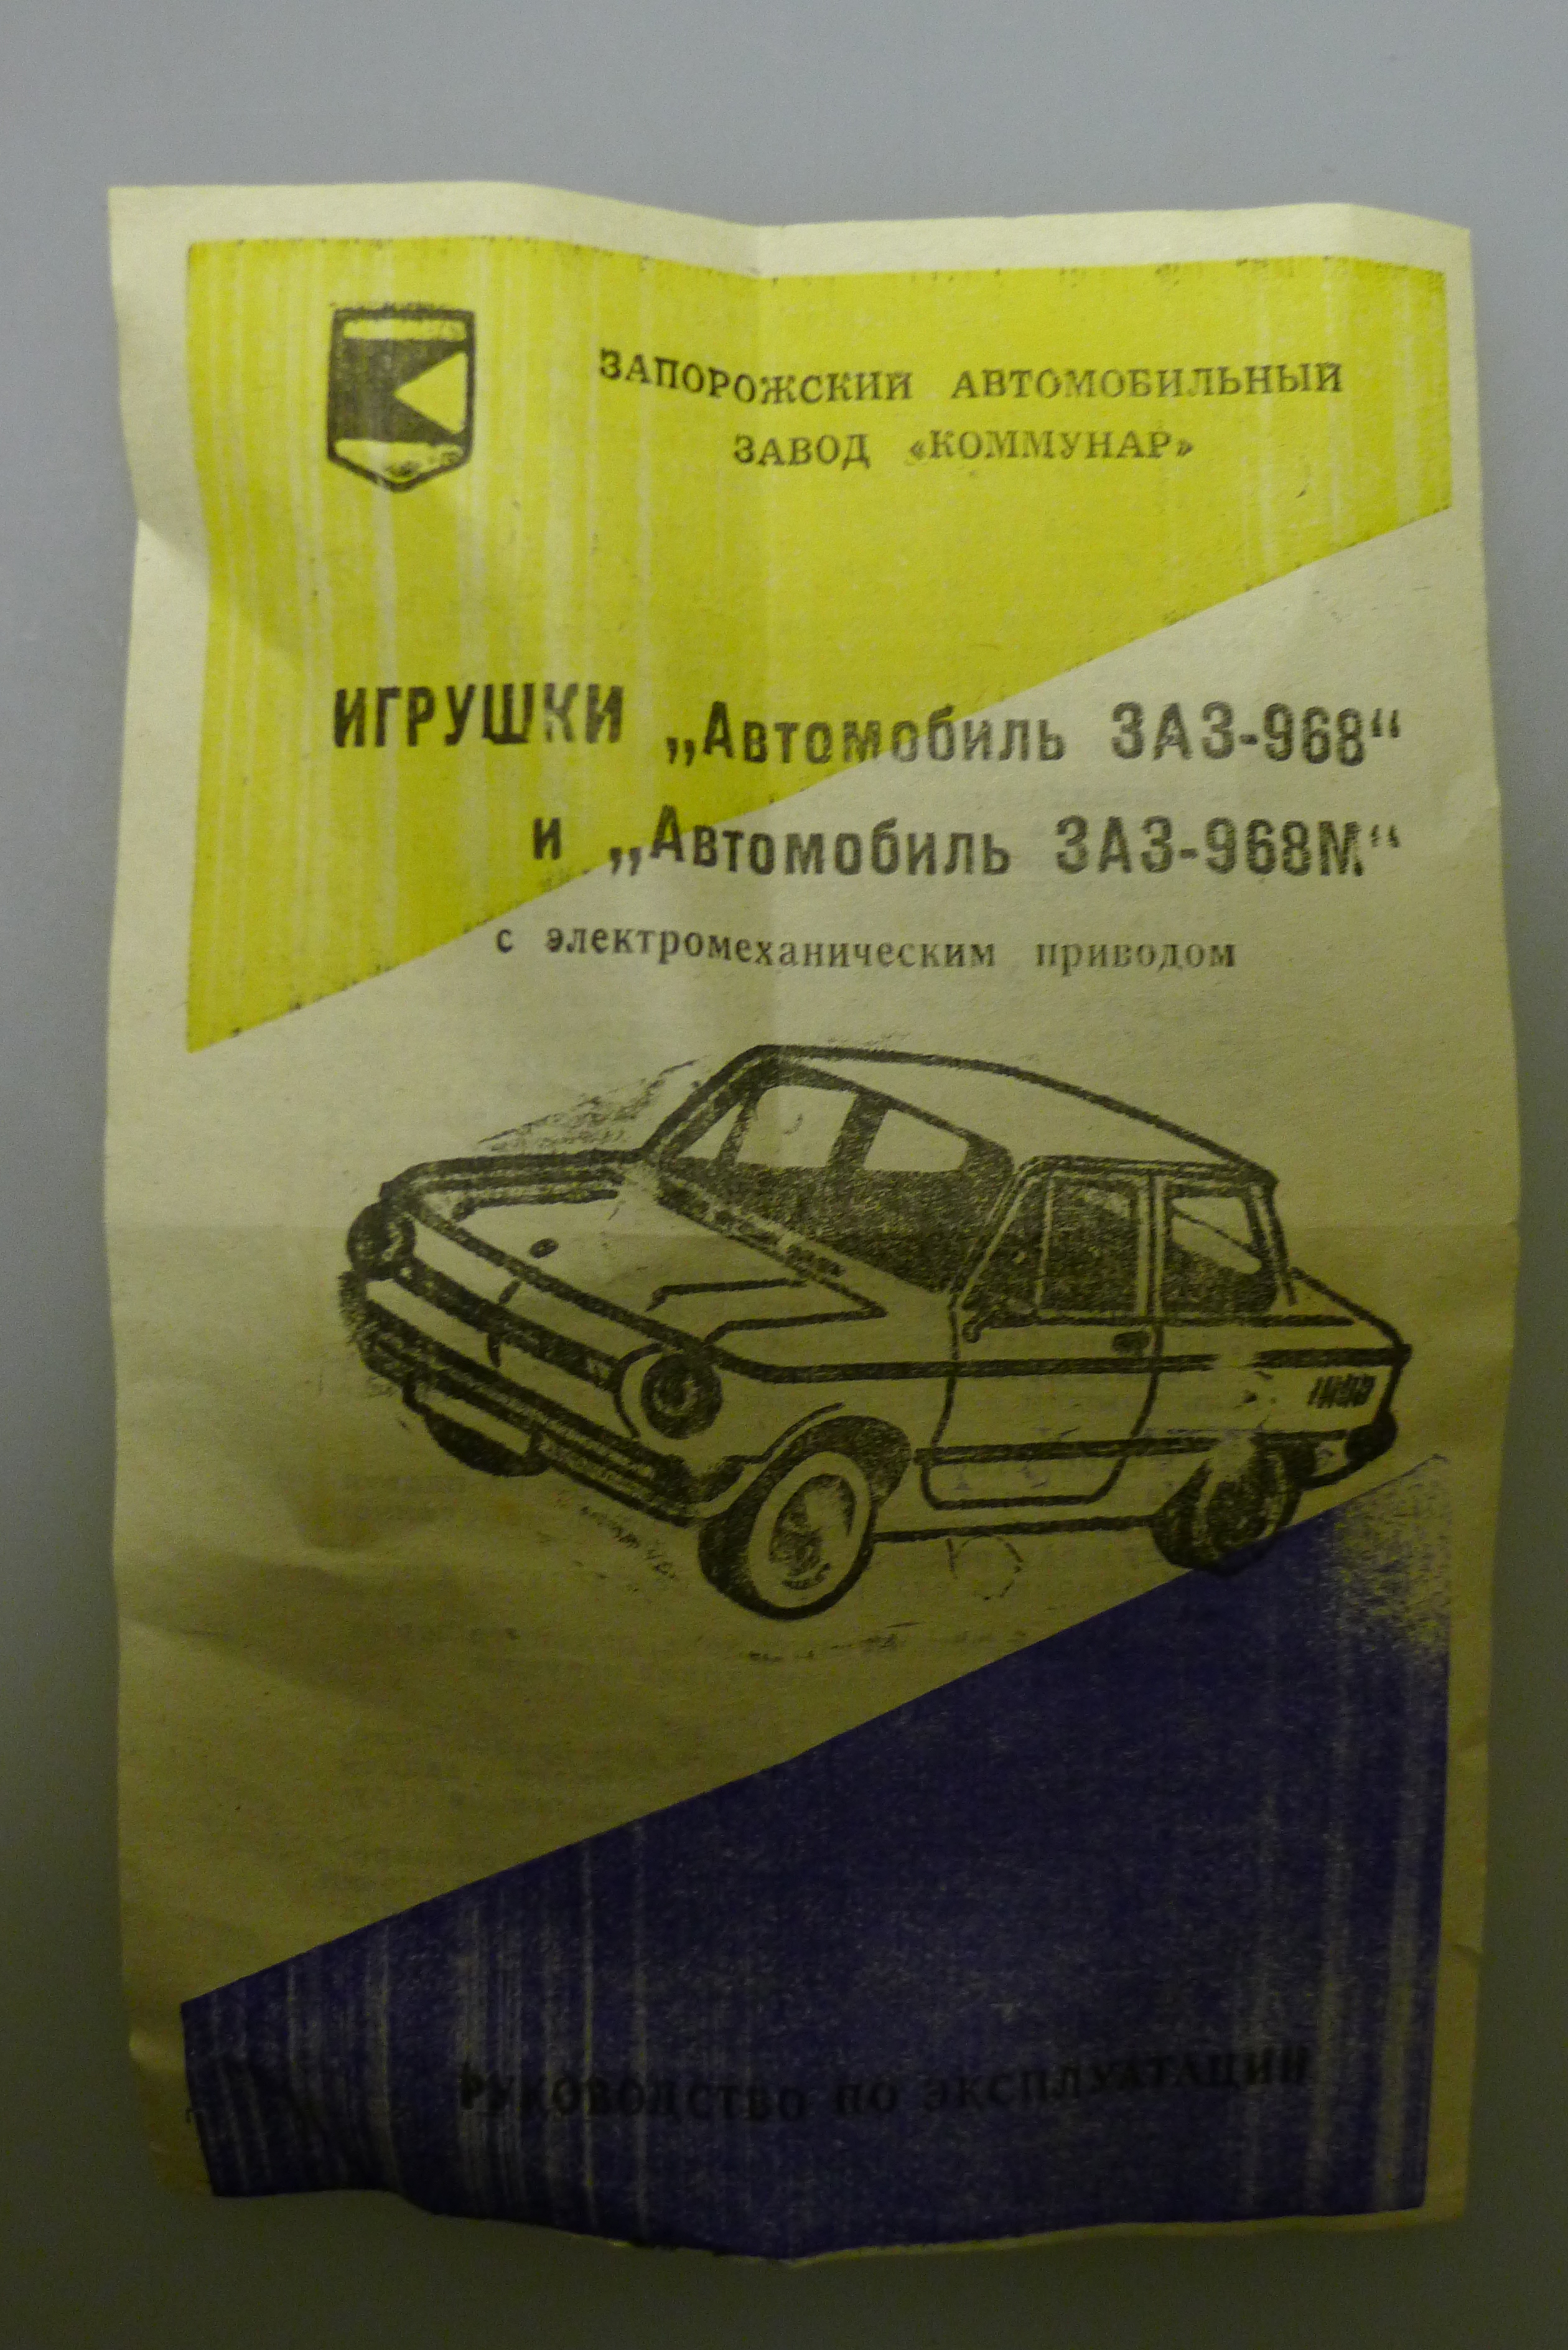   -968  1995 ,  25 .  10 . # 9 hobbyplus.ru